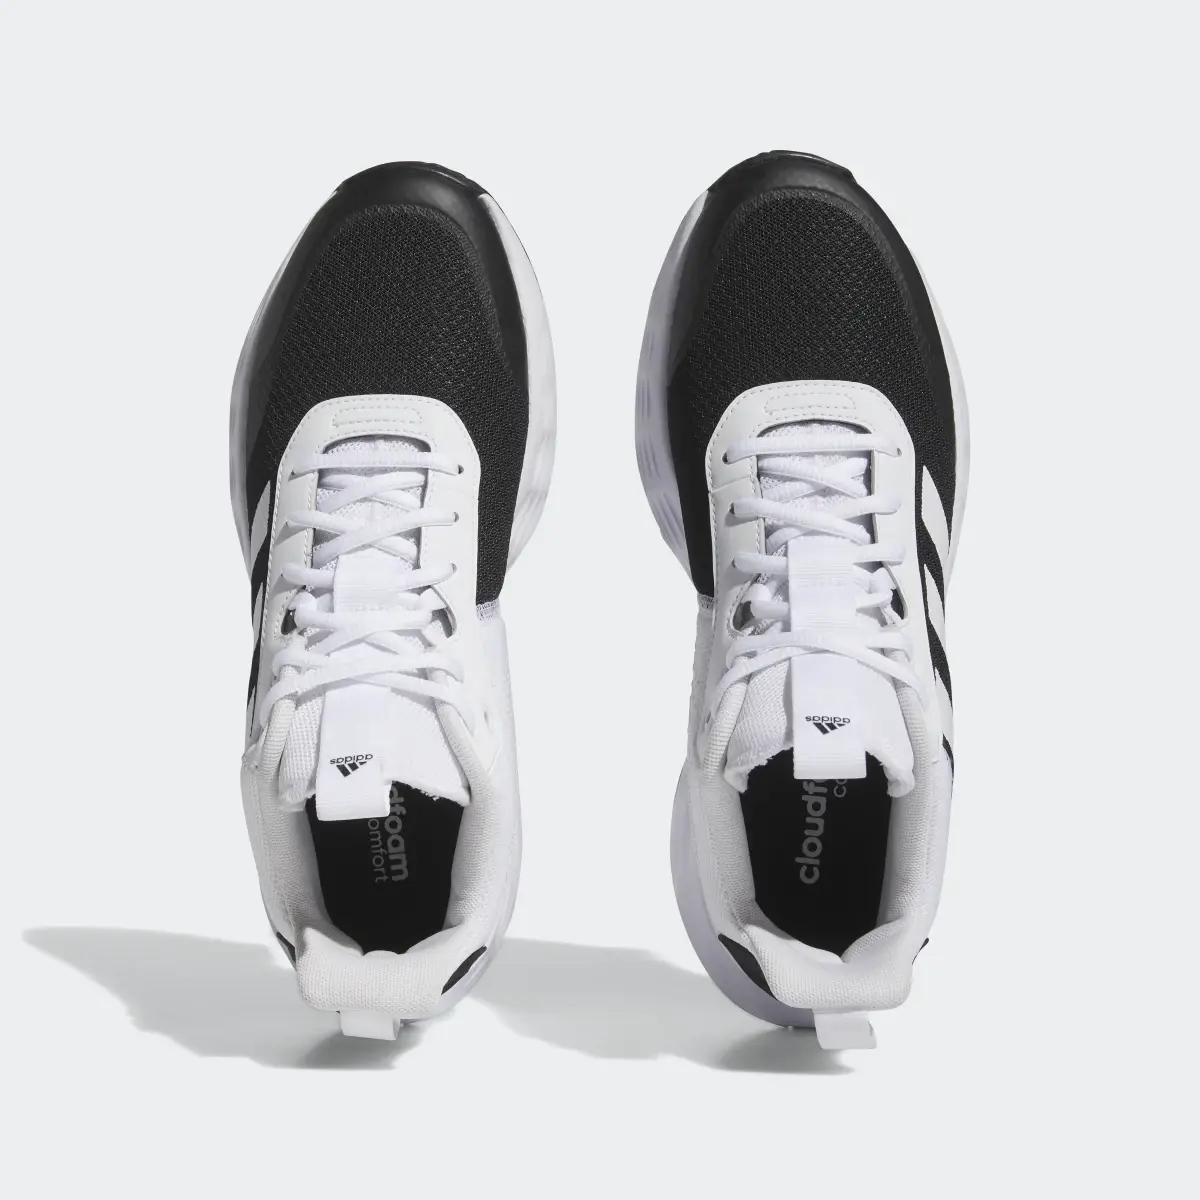 Adidas Ownthegame Ayakkabı. 3